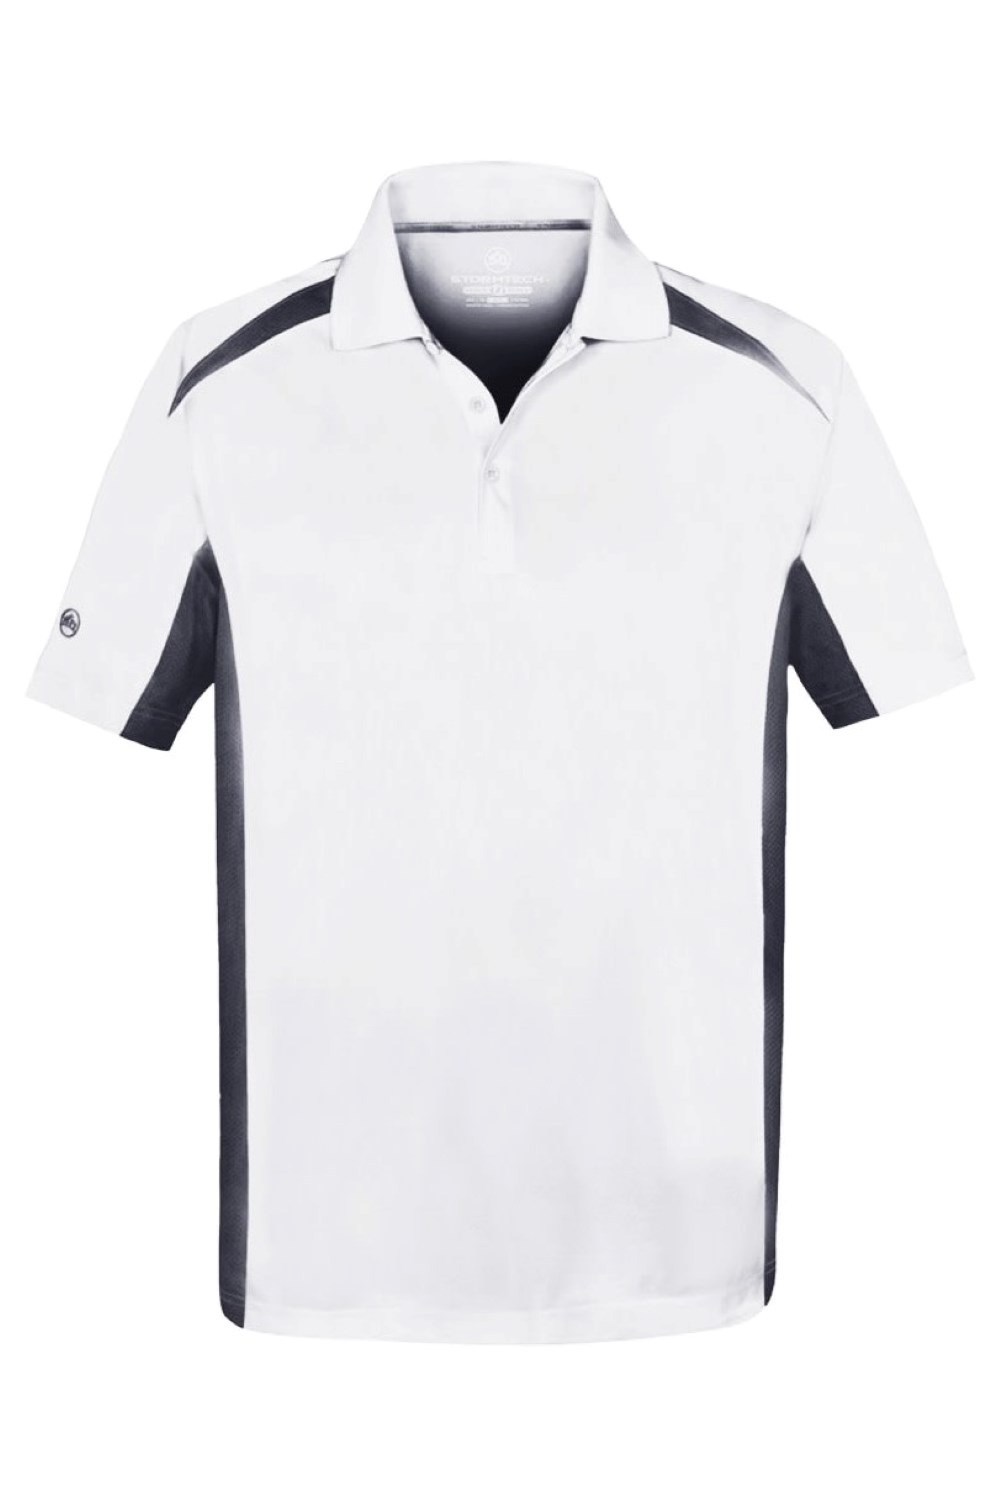 Two-Tone Mens Performance Polo Shirt -